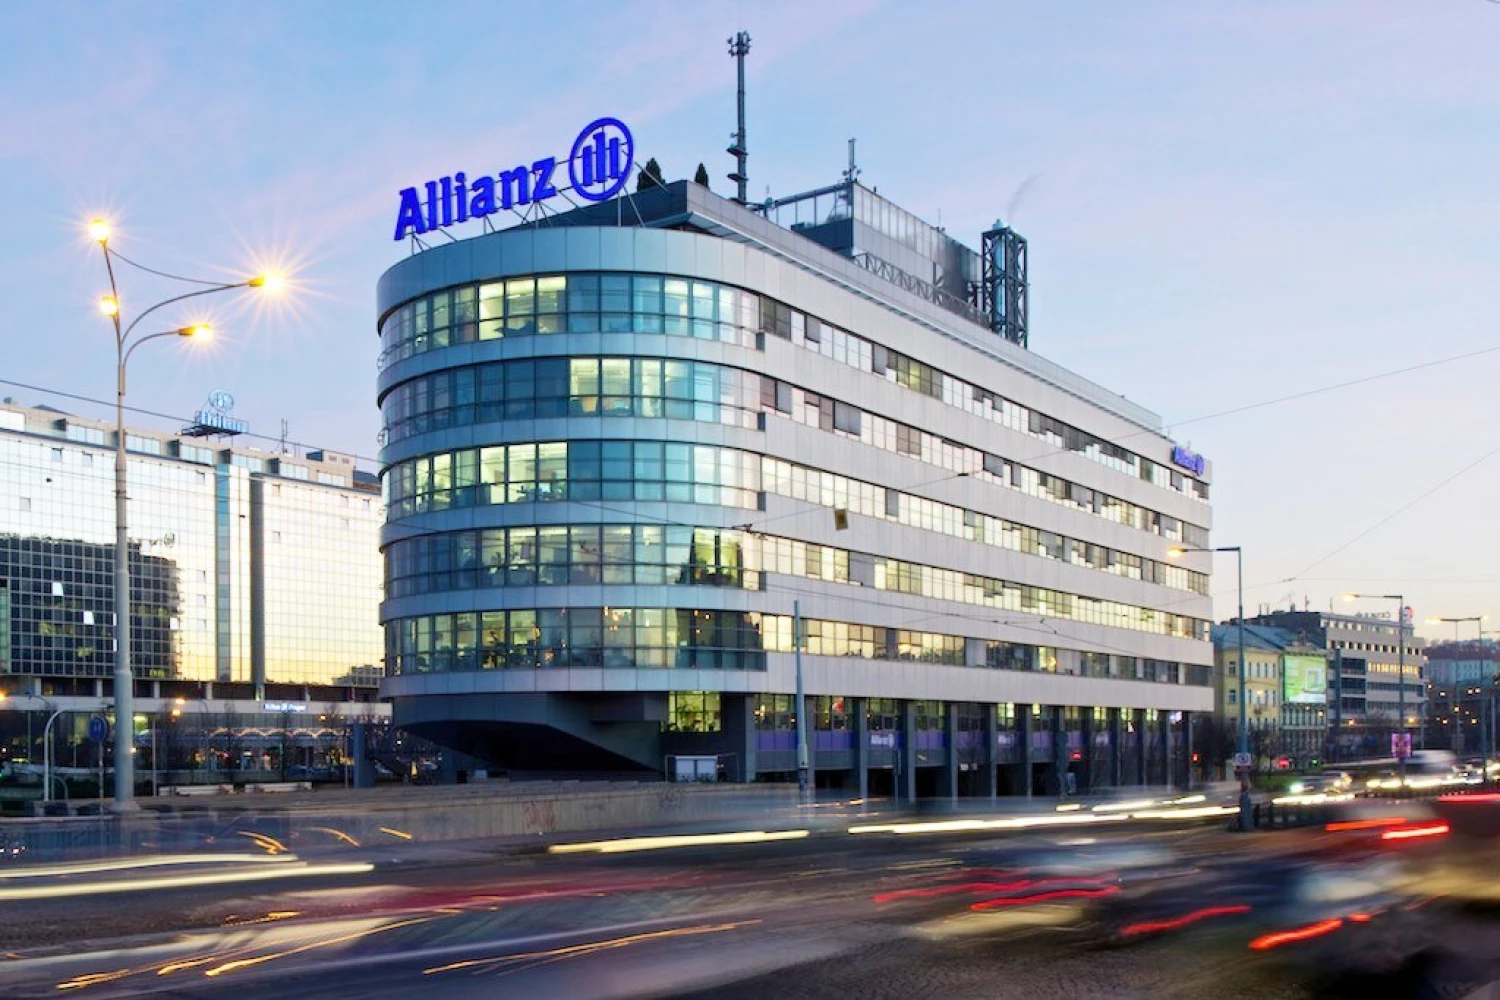 Allianz zvýšila zisk na 3,8 miliardy eur. Akcionářům stoupnou dividendy